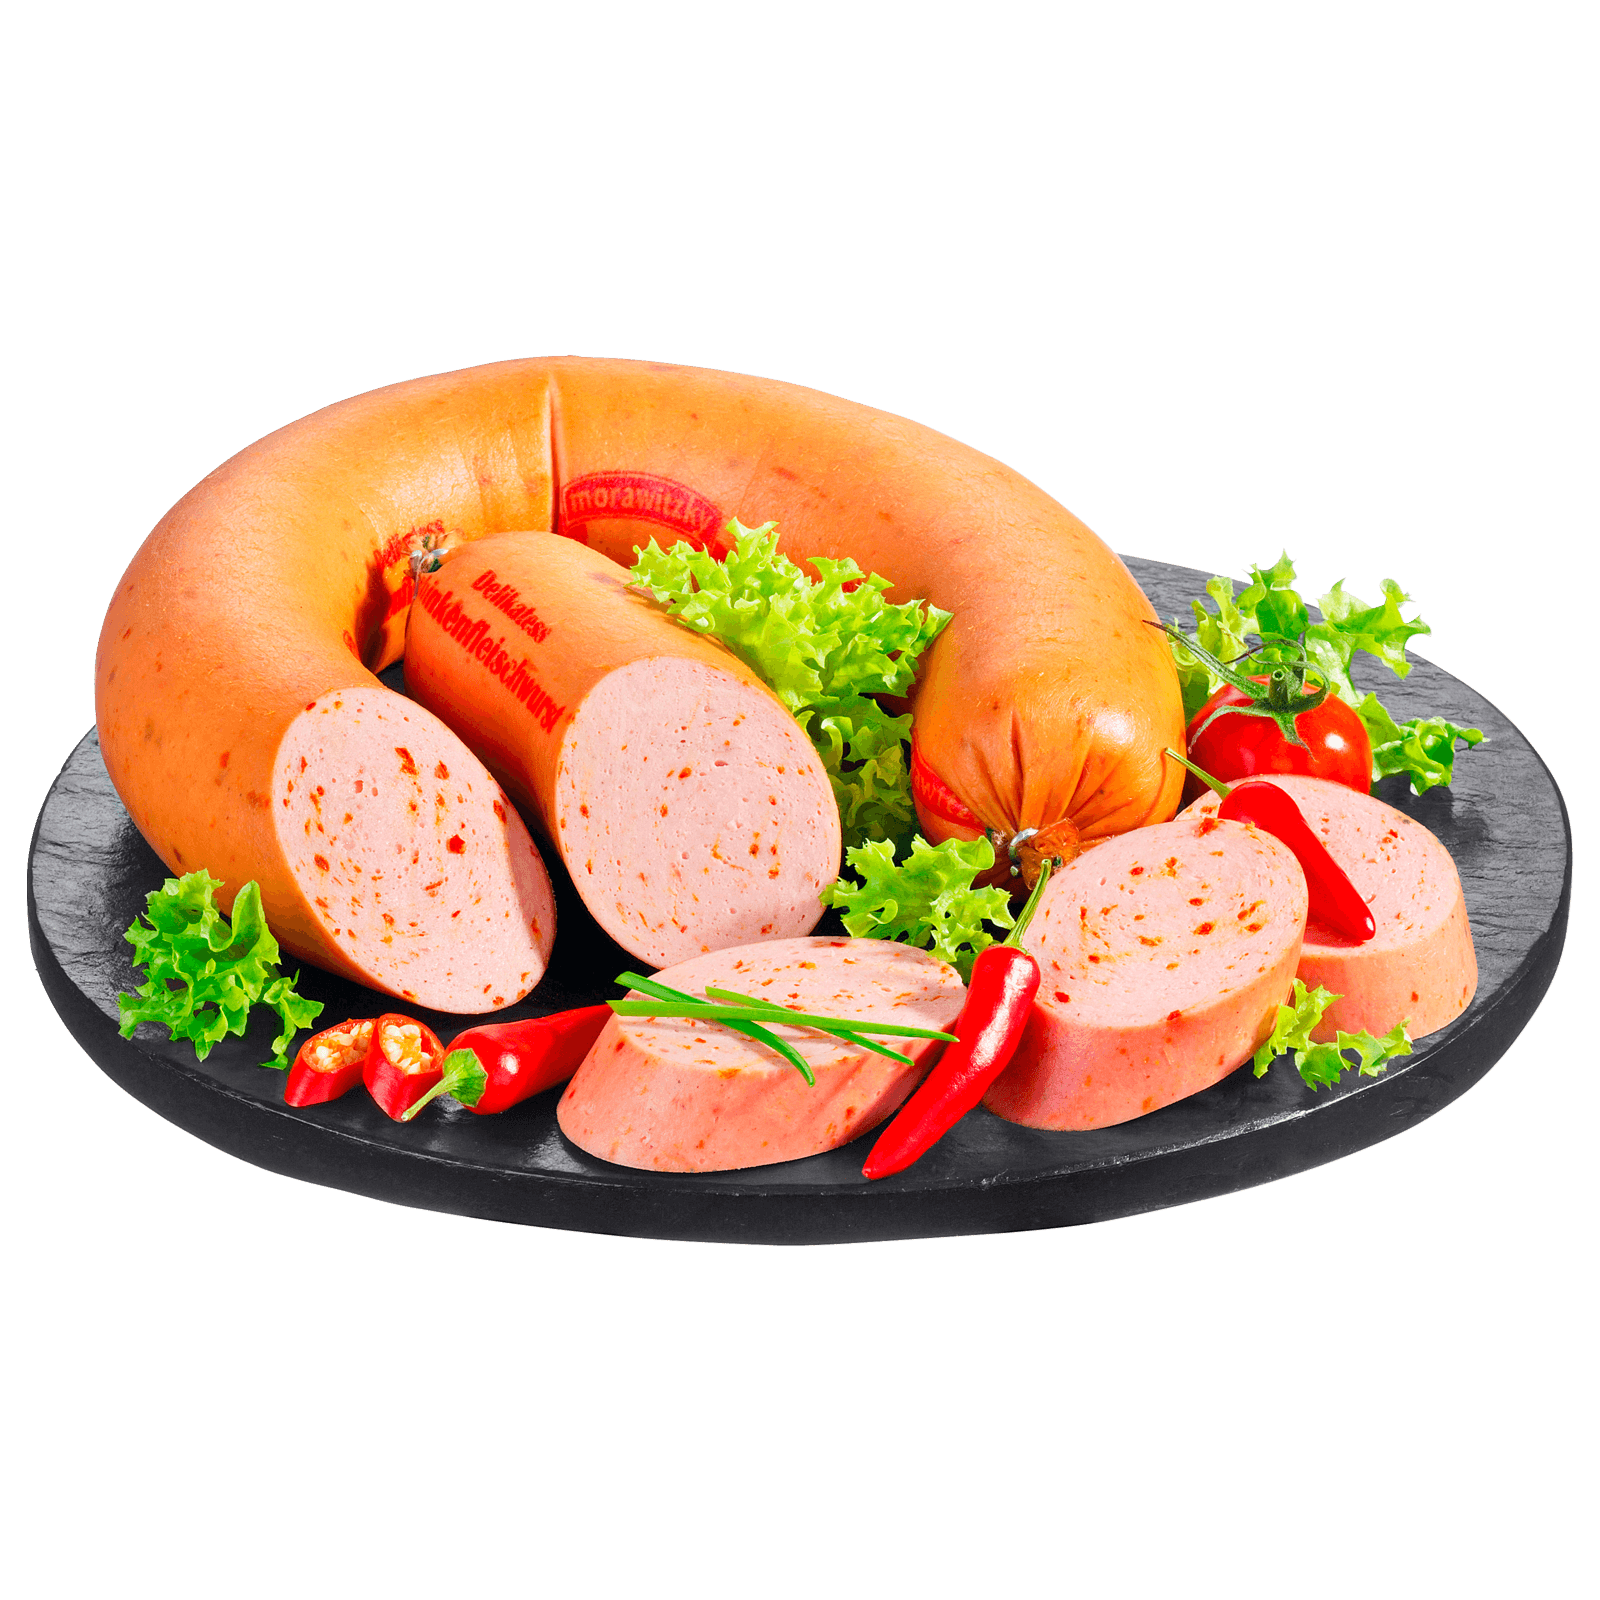 Morawitzky Chili Fleischwurst im Ring bei REWE online bestellen!